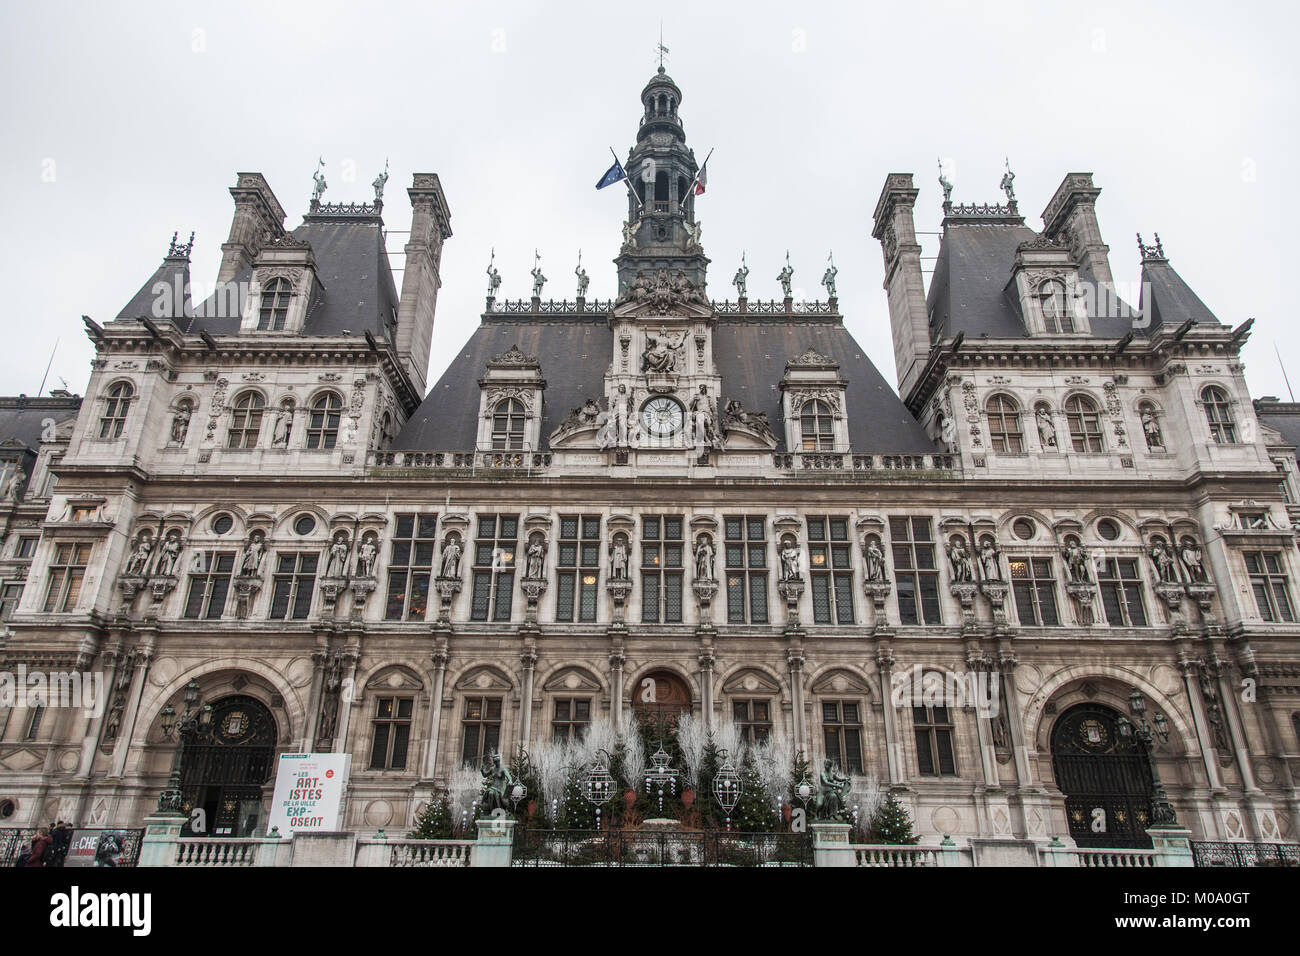 PARIS, FRANCE - 20 décembre 2017 : Paris City Hall (Hôtel de Ville) pris en hiver au cours d'un après-midi nuageux. L'hôtel de ville héberge le gouve rneme Paris Banque D'Images